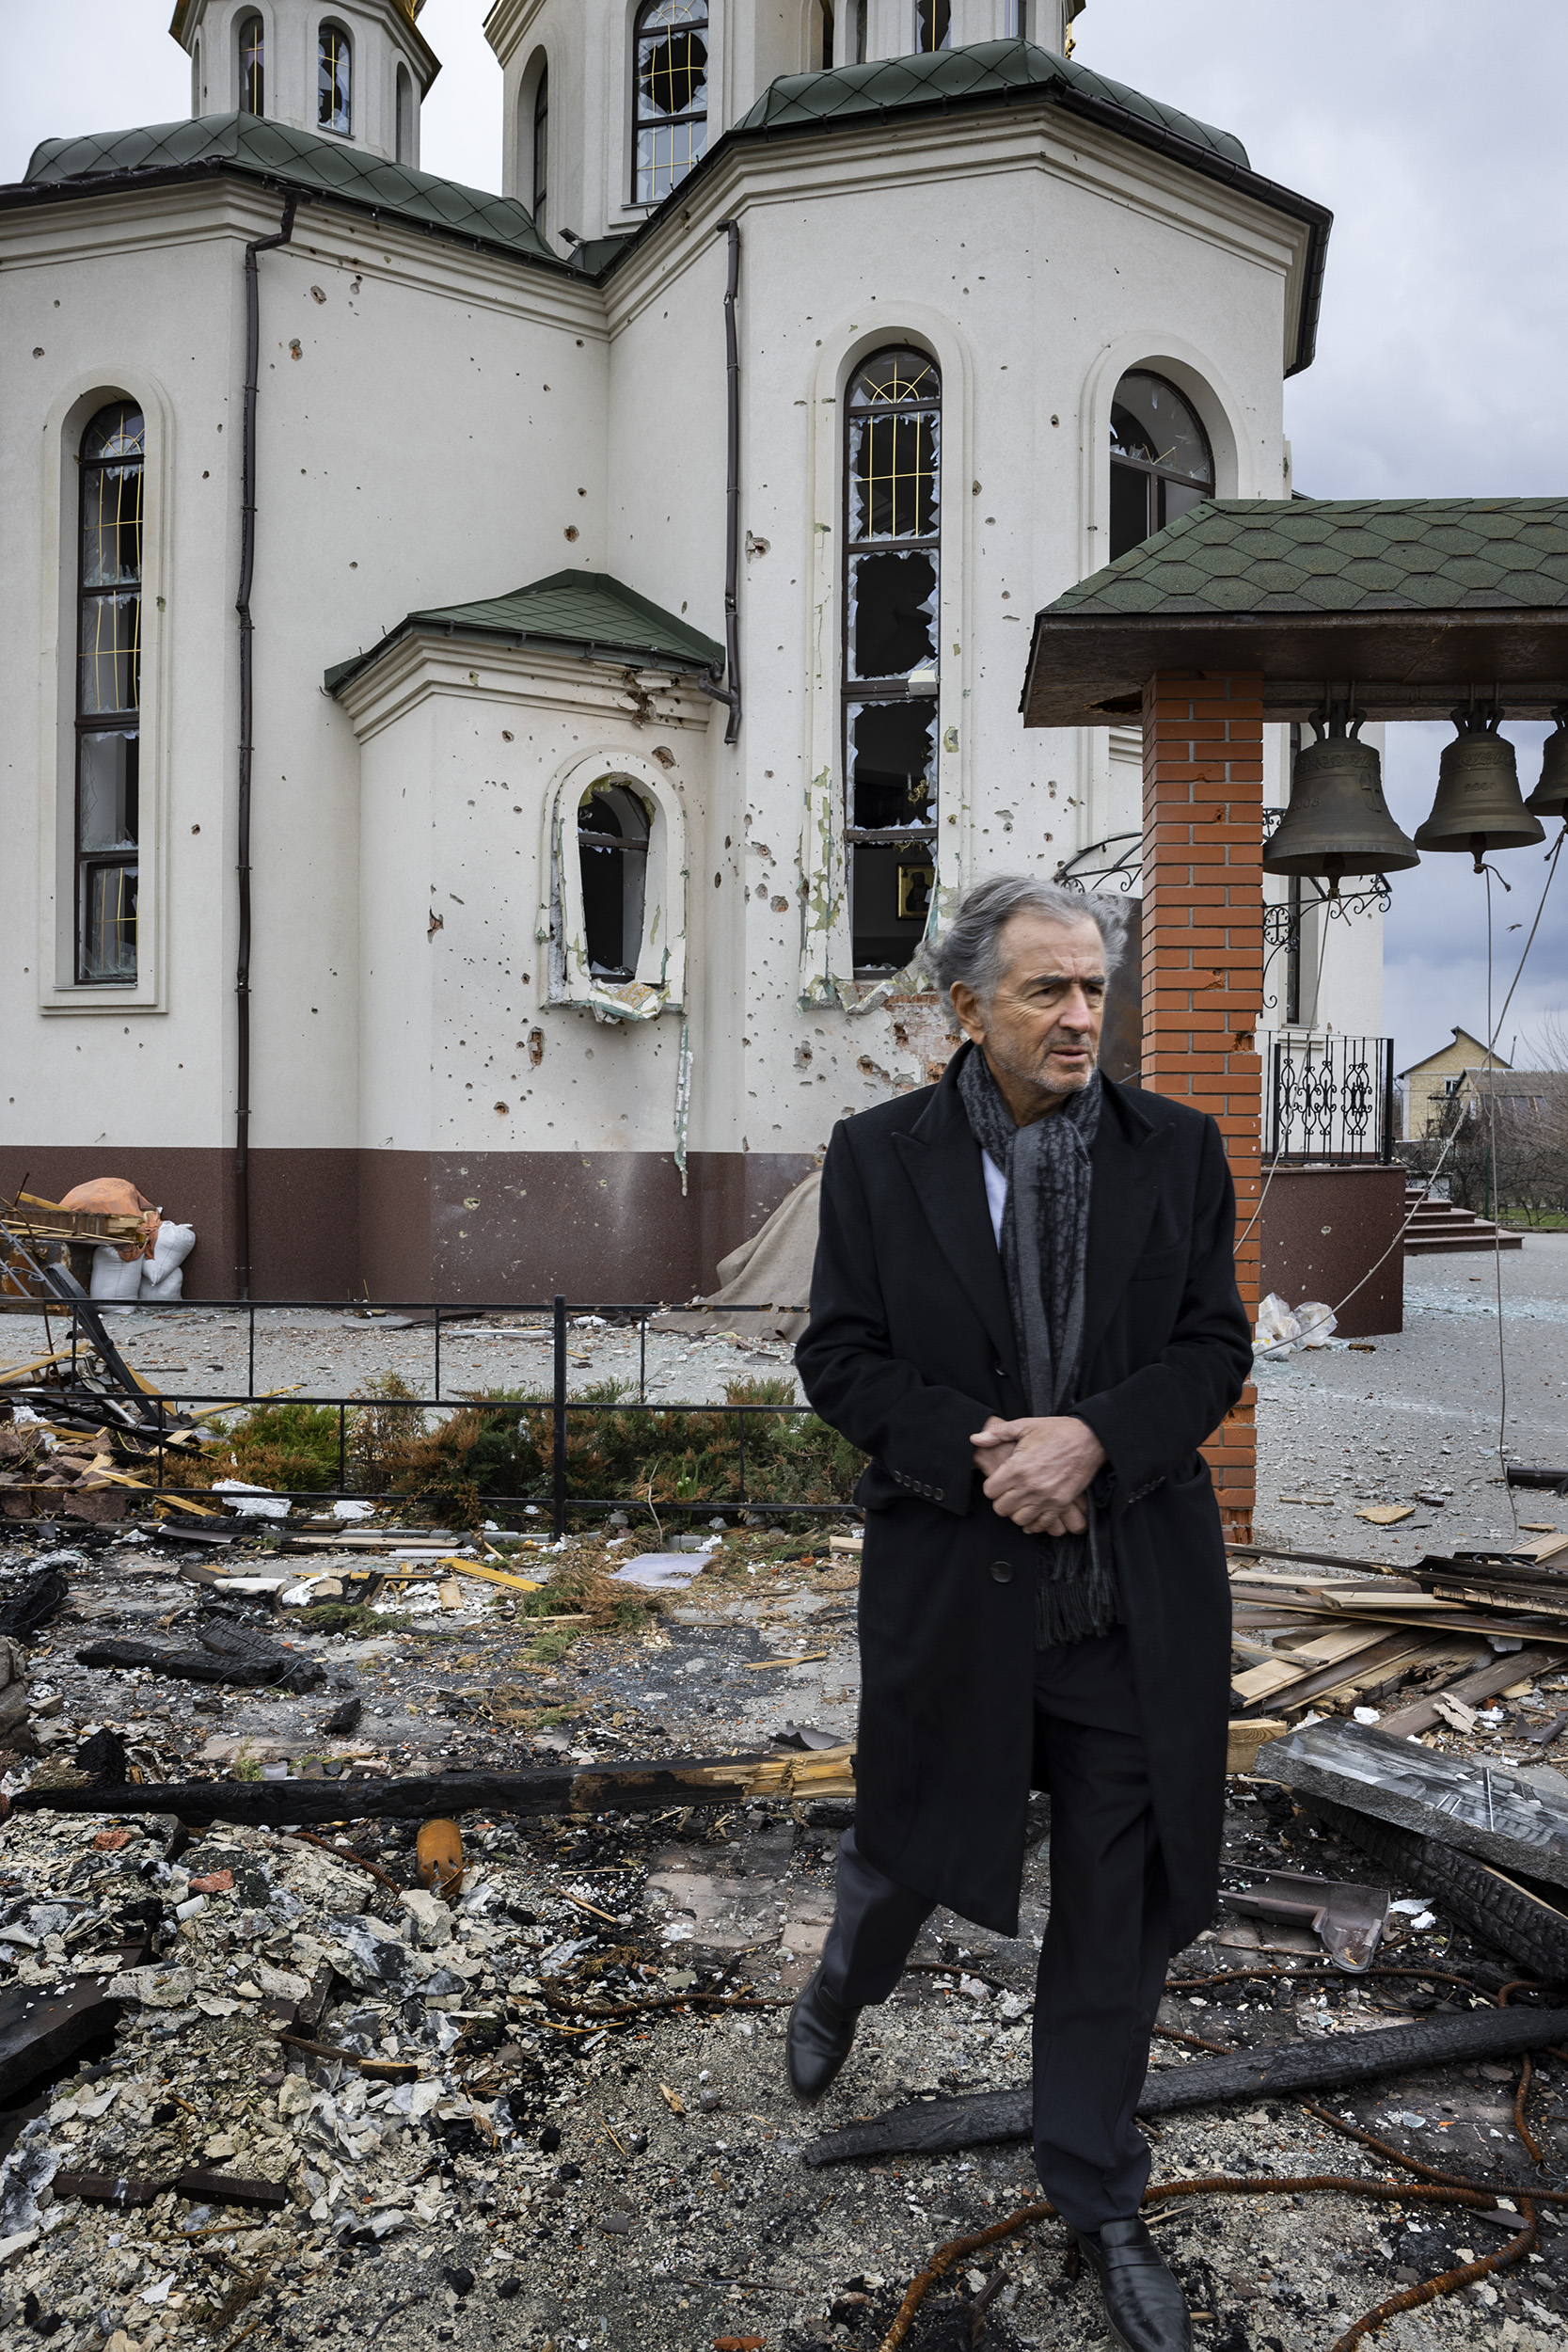 Bernard-Henri Lévy sur les lieux de la guerre en Ukraine, dans un village près de Kiev. Il marche dans les débris. Une église orthodoxe au fond a été détruit. Les vitraux sont cassés, il y a des impacts de balles sur les murs.